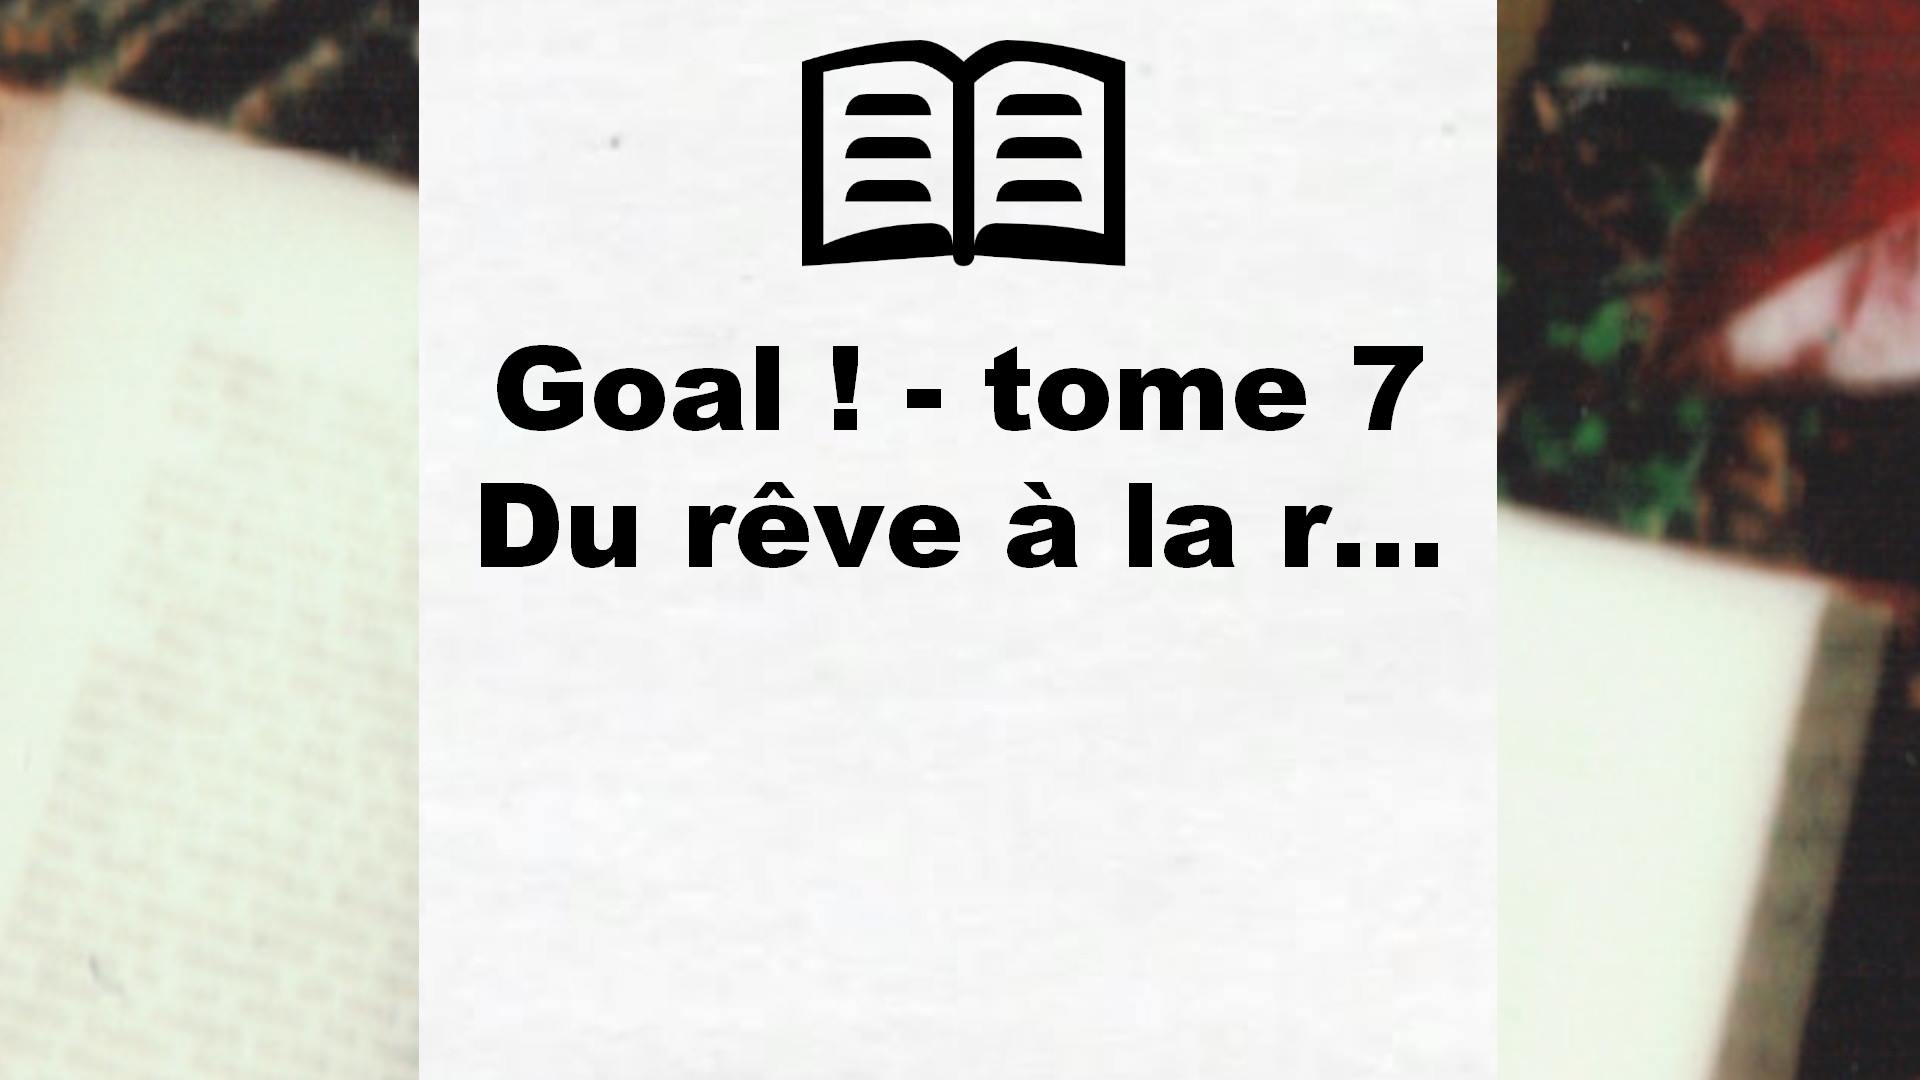 Goal ! – tome 7 Du rêve à la r… – Critique